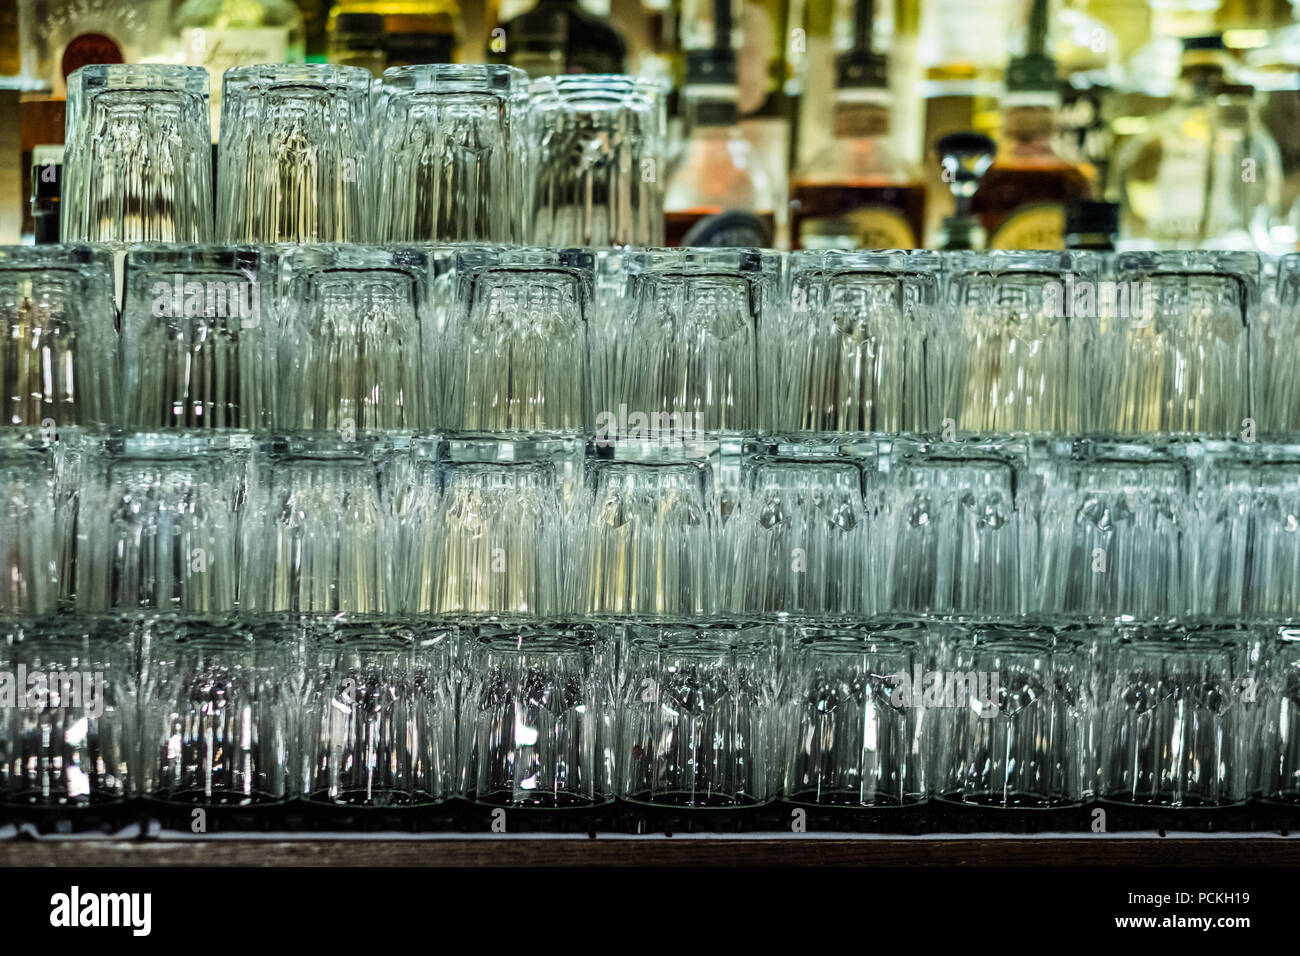 Leere Gläser auf Bar Inneneinrichtung Hintergrund. Künstliche Beleuchtung erzeugt Reflexionen und starrt in Glas. Zusammenfassung Hintergrund. Kopieren Sie Platz. Stockfoto